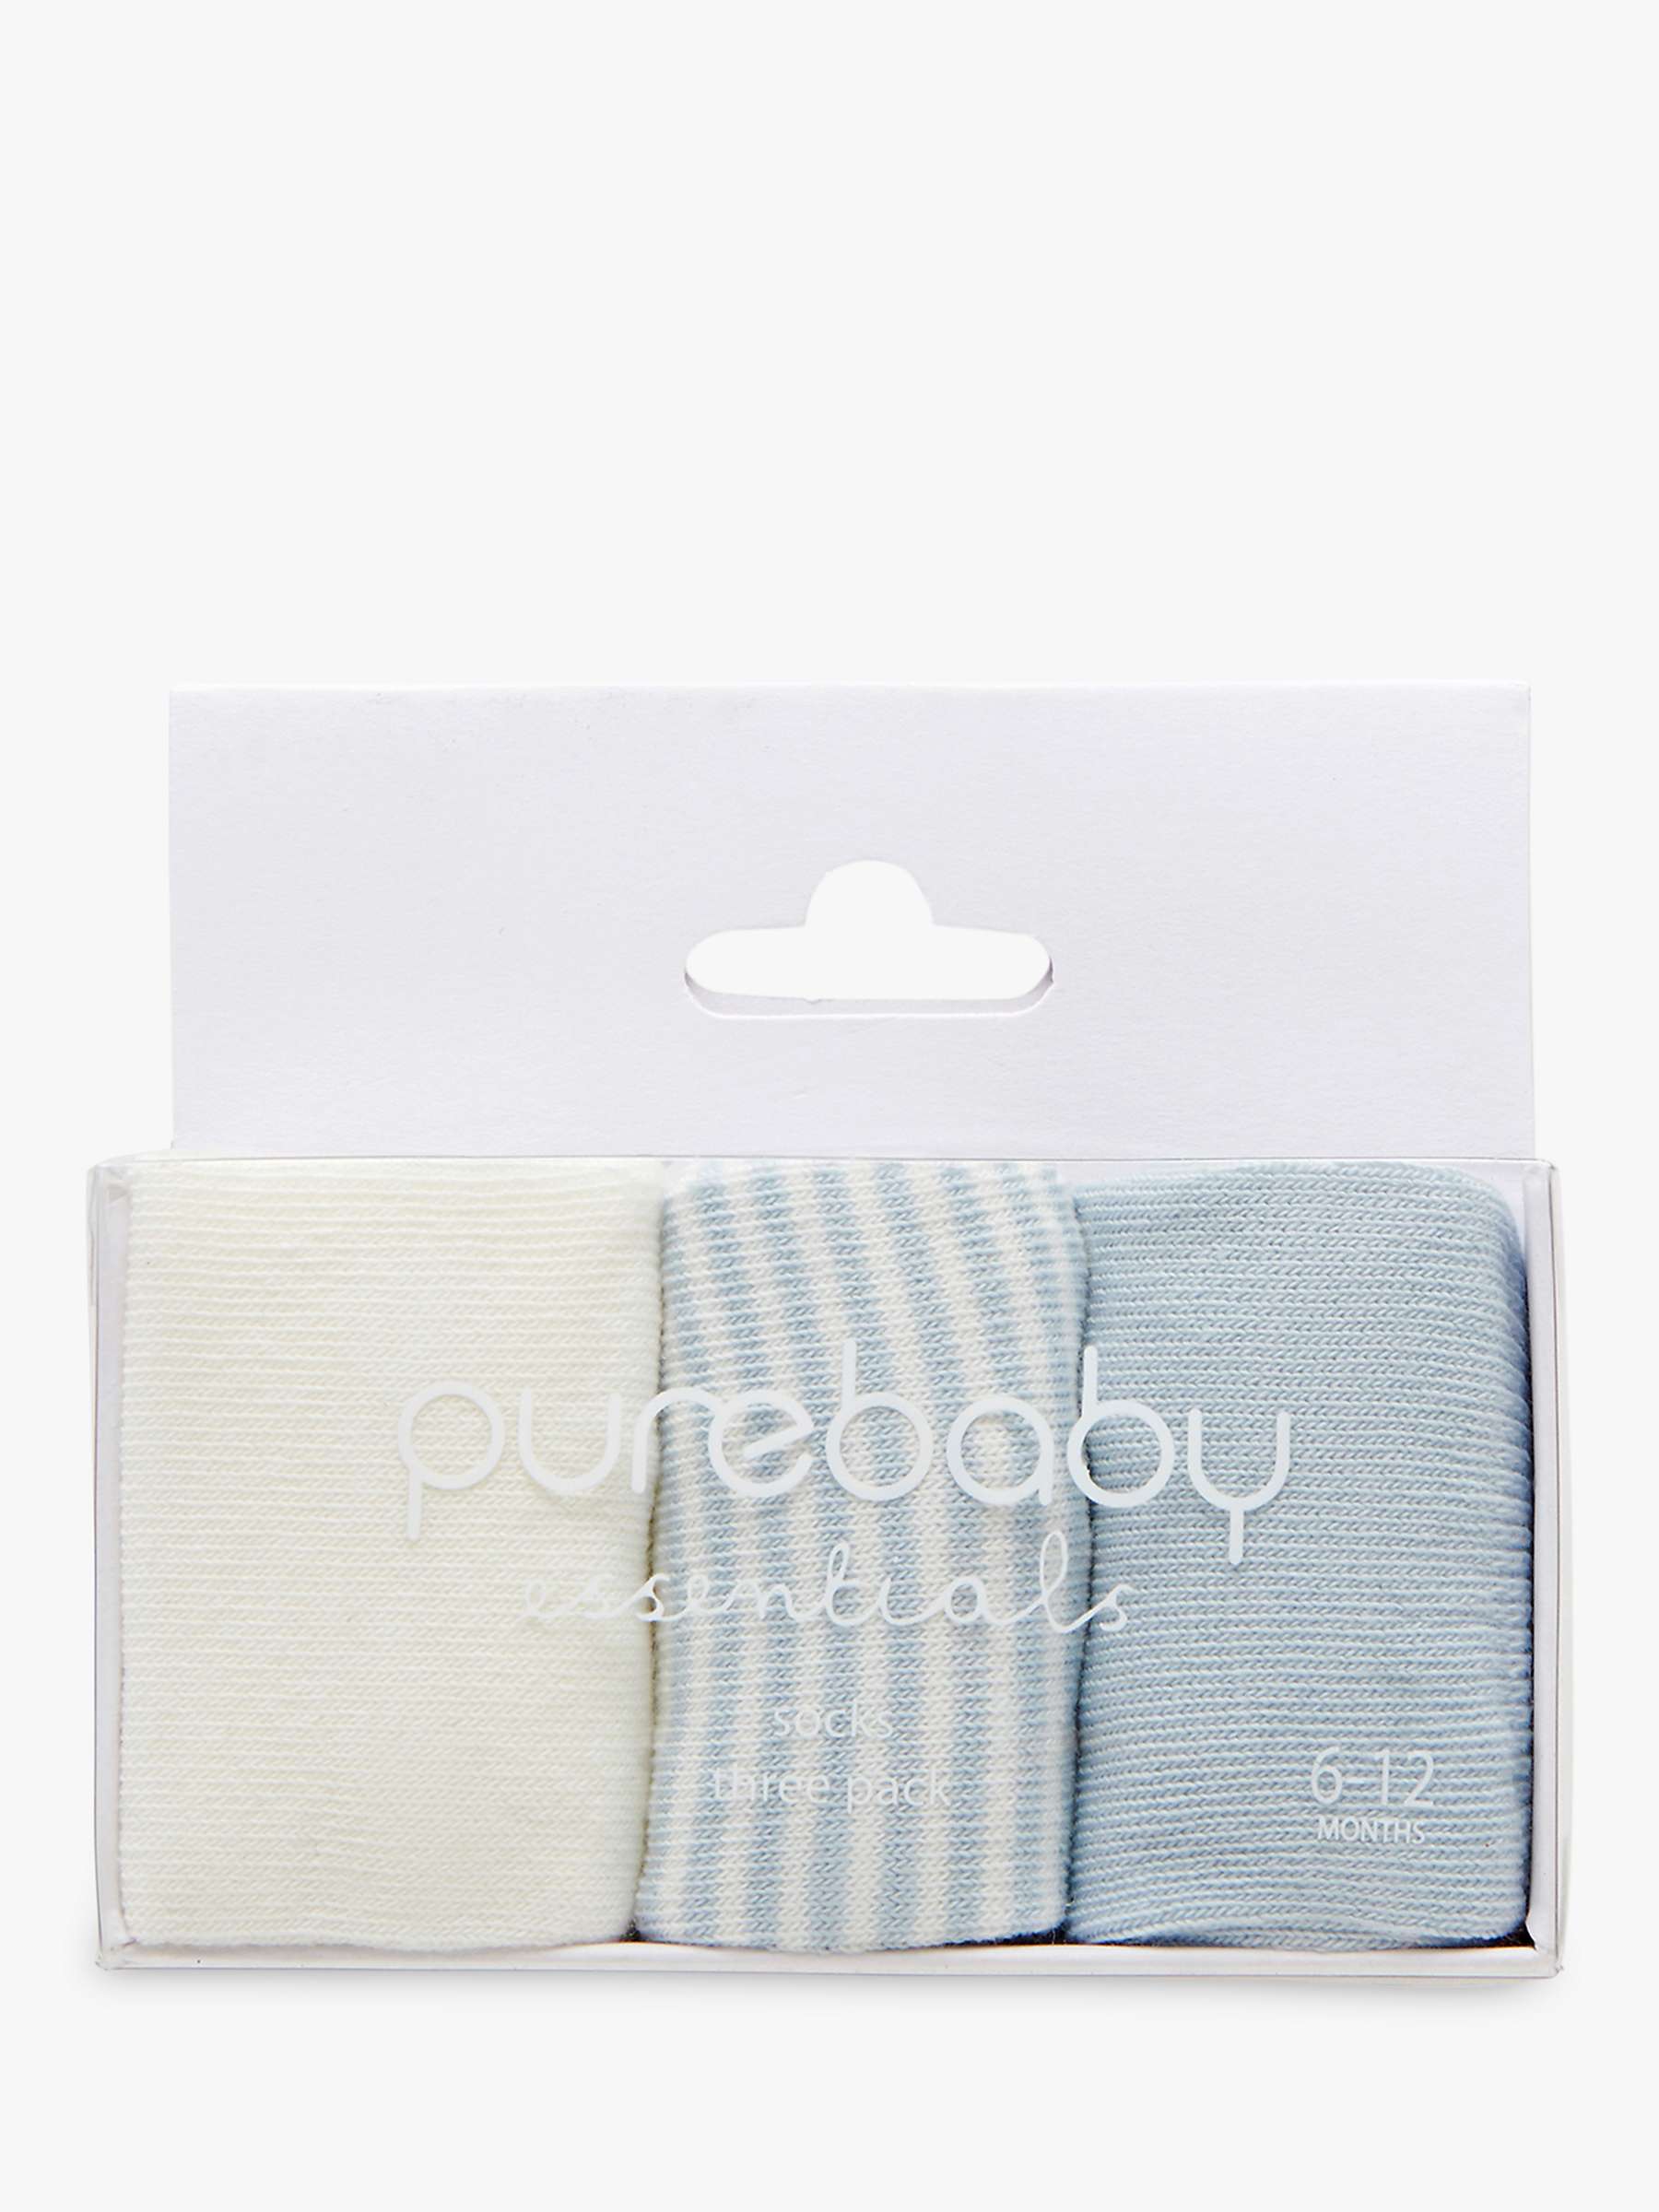 Buy Purebaby Socks, Pack of 3 Online at johnlewis.com